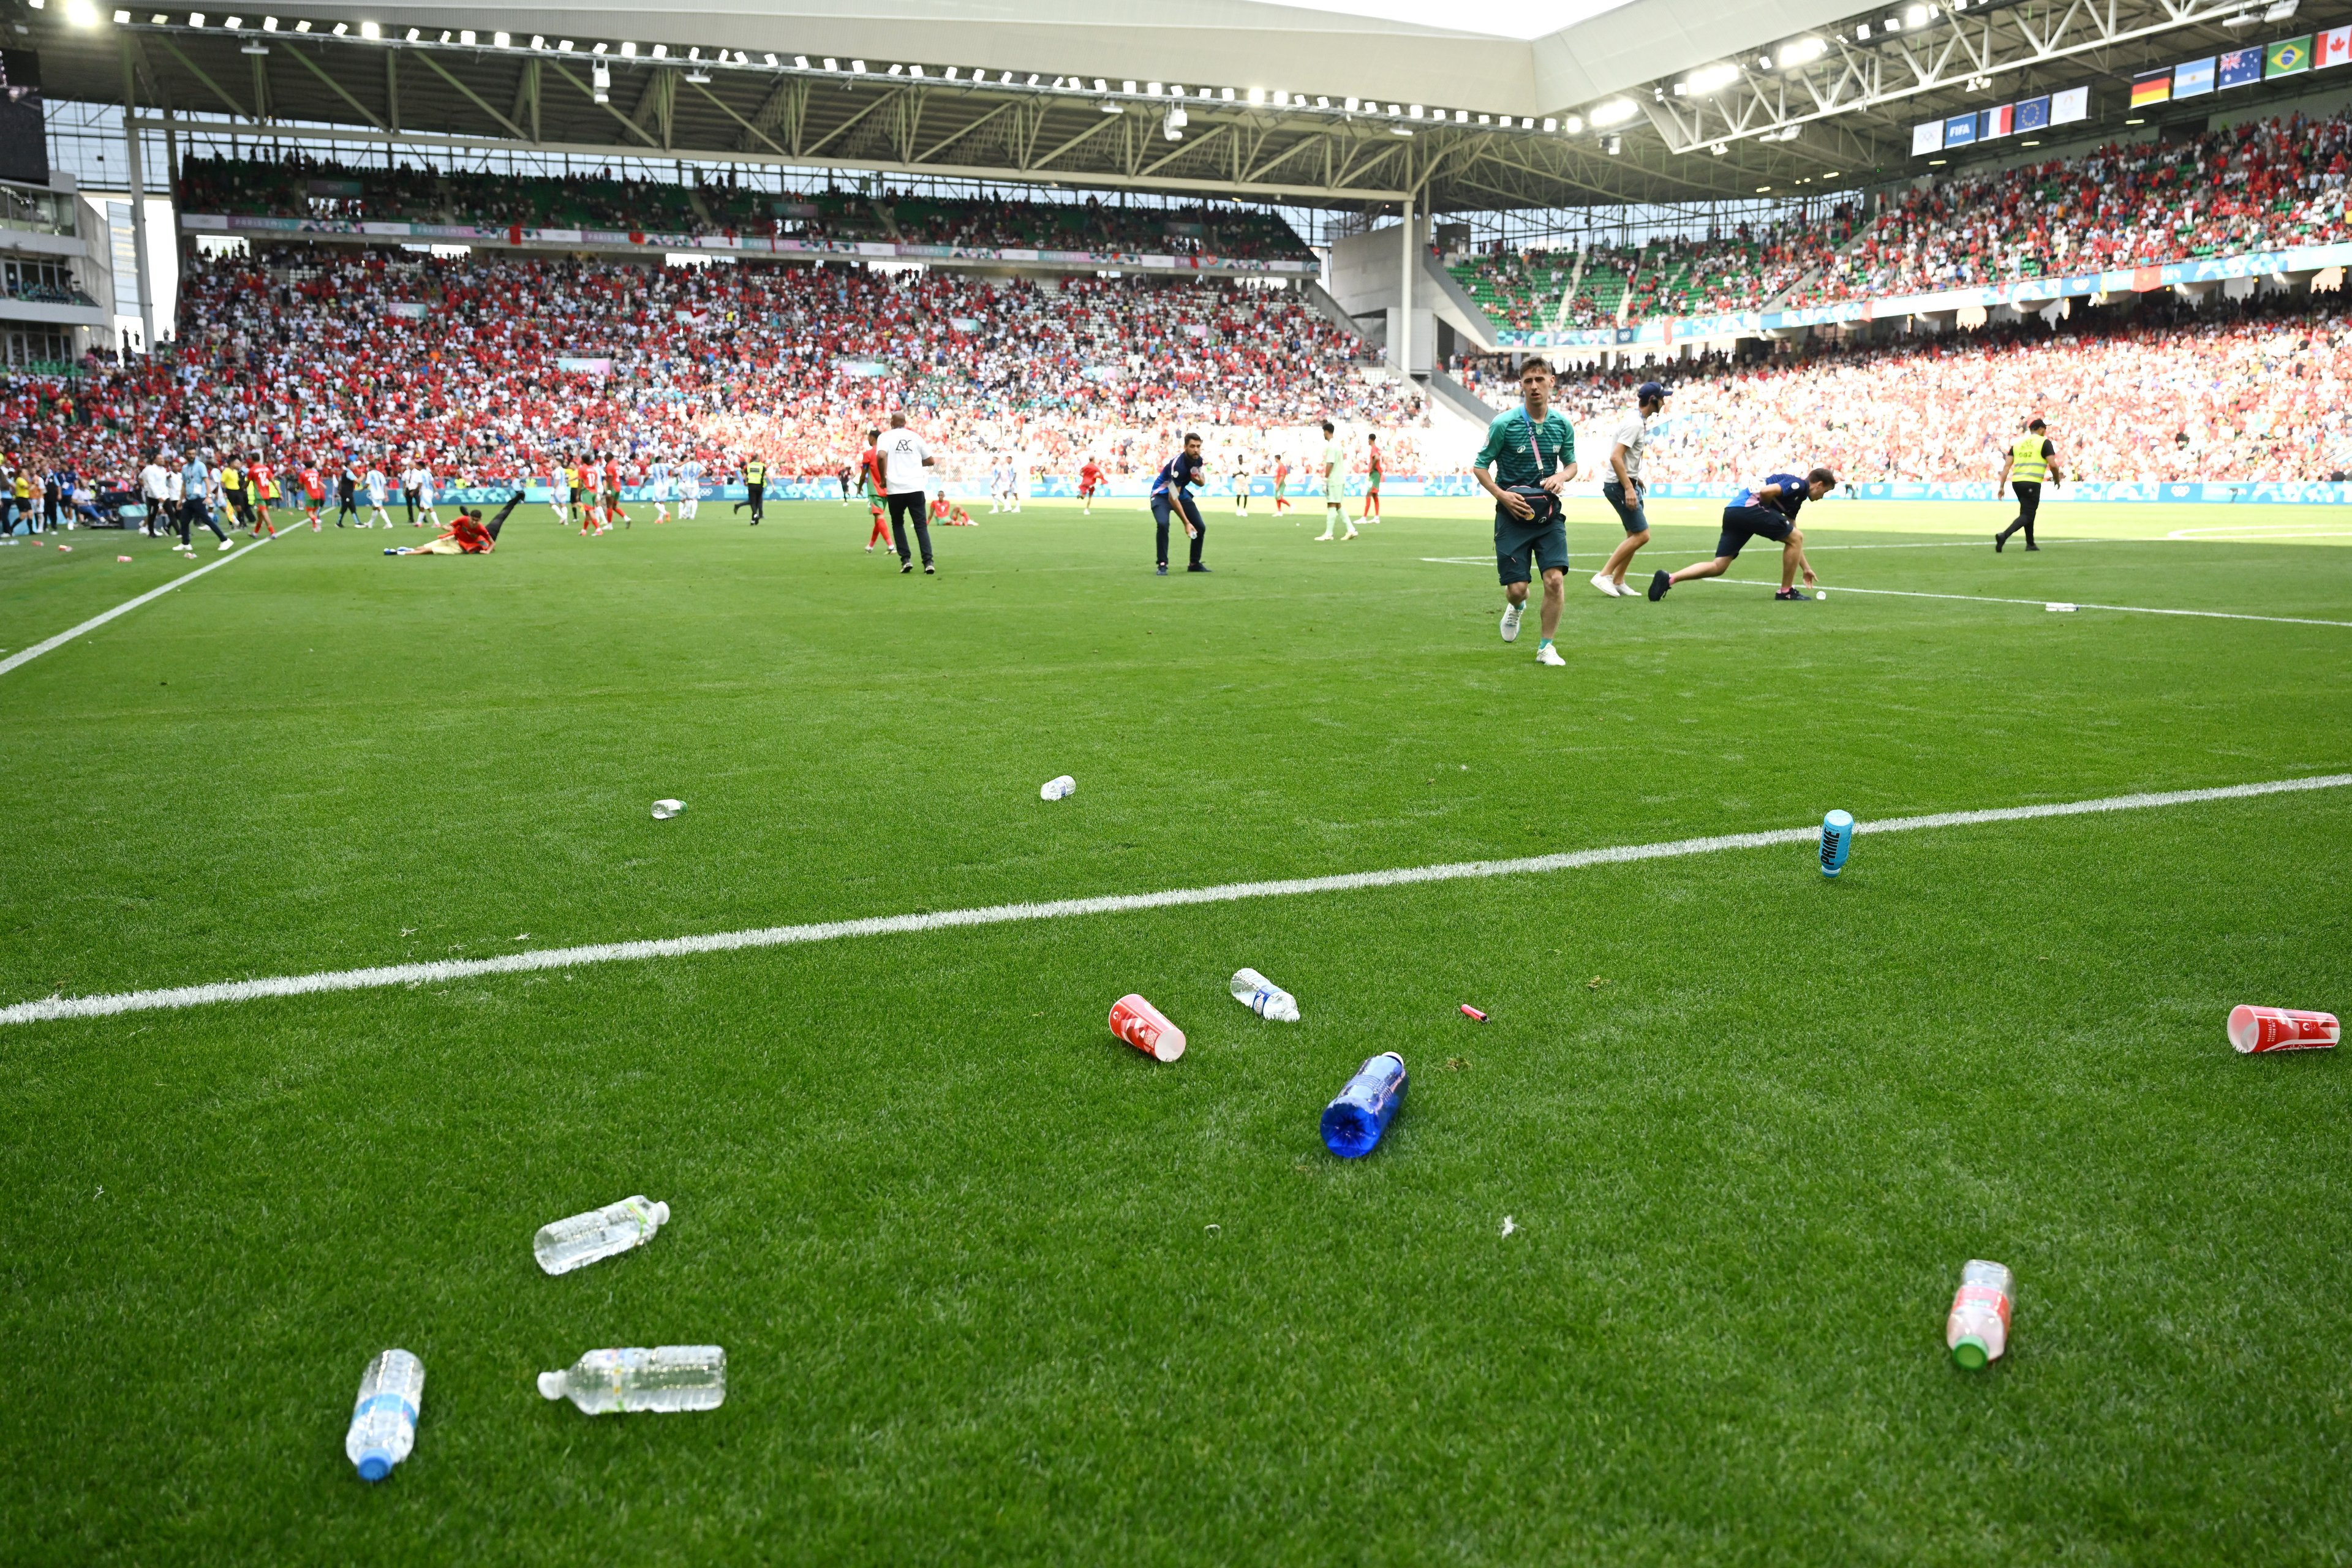 Uma visão geral dentro do estádio enquanto a equipe remove garrafas do campo que foram atiradas das arquibancadas durante a partida do grupo B masculino entre Argentina e Marrocos durante os Jogos Olímpicos de Paris 2024 no Stade Geoffroy-Guichard em 24 de julho de 2024 em Saint-Etienne, França.